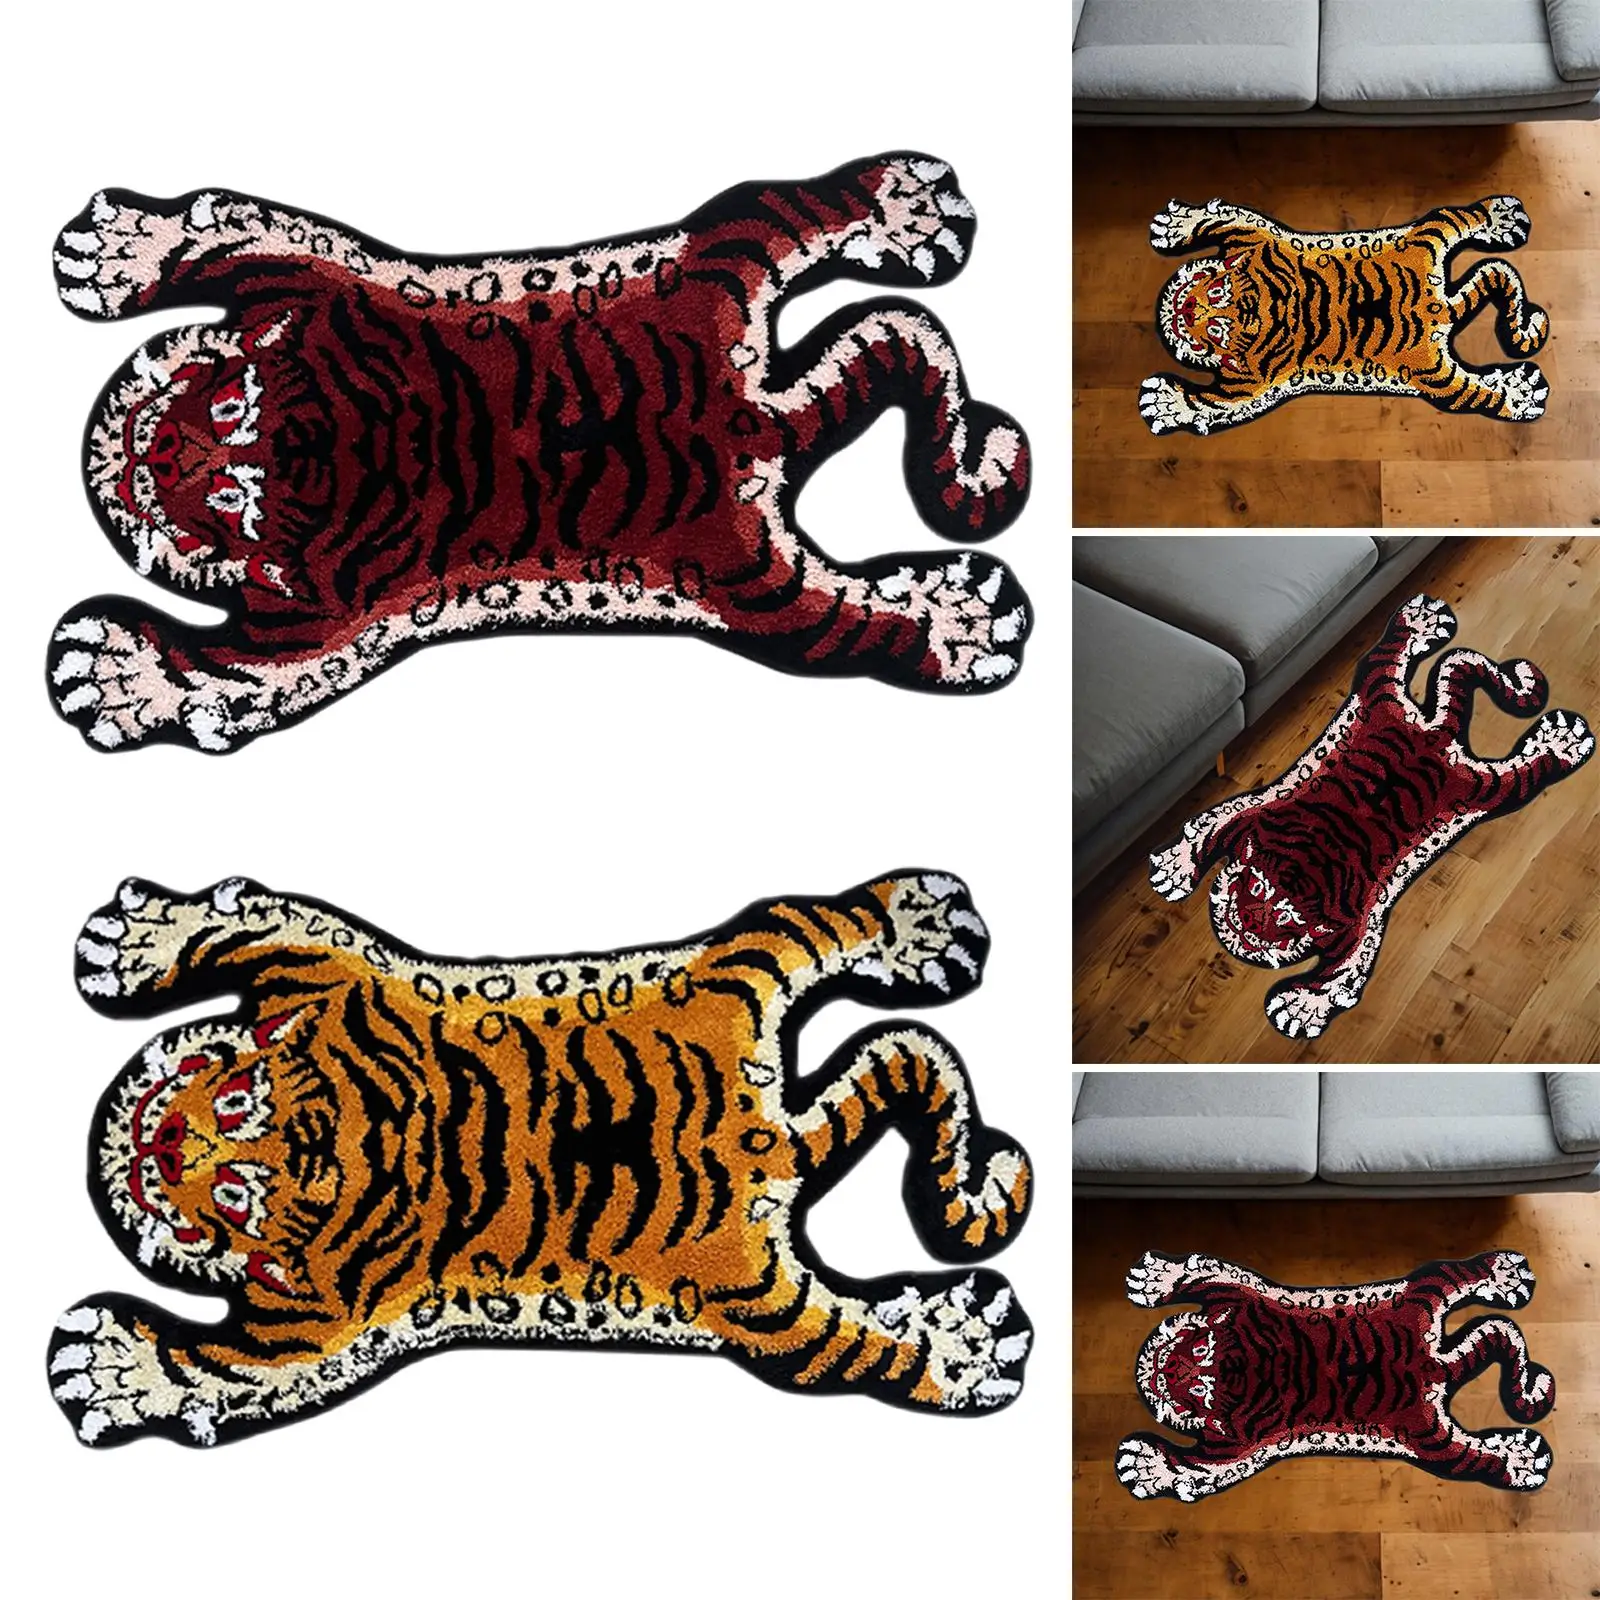 Tiger Rug Nonslip Tufted Soft Area Rug Animal Shaped Rug Tiger Carpet for Kid`s Room Bathtub Kitchen Bathroom Living Room